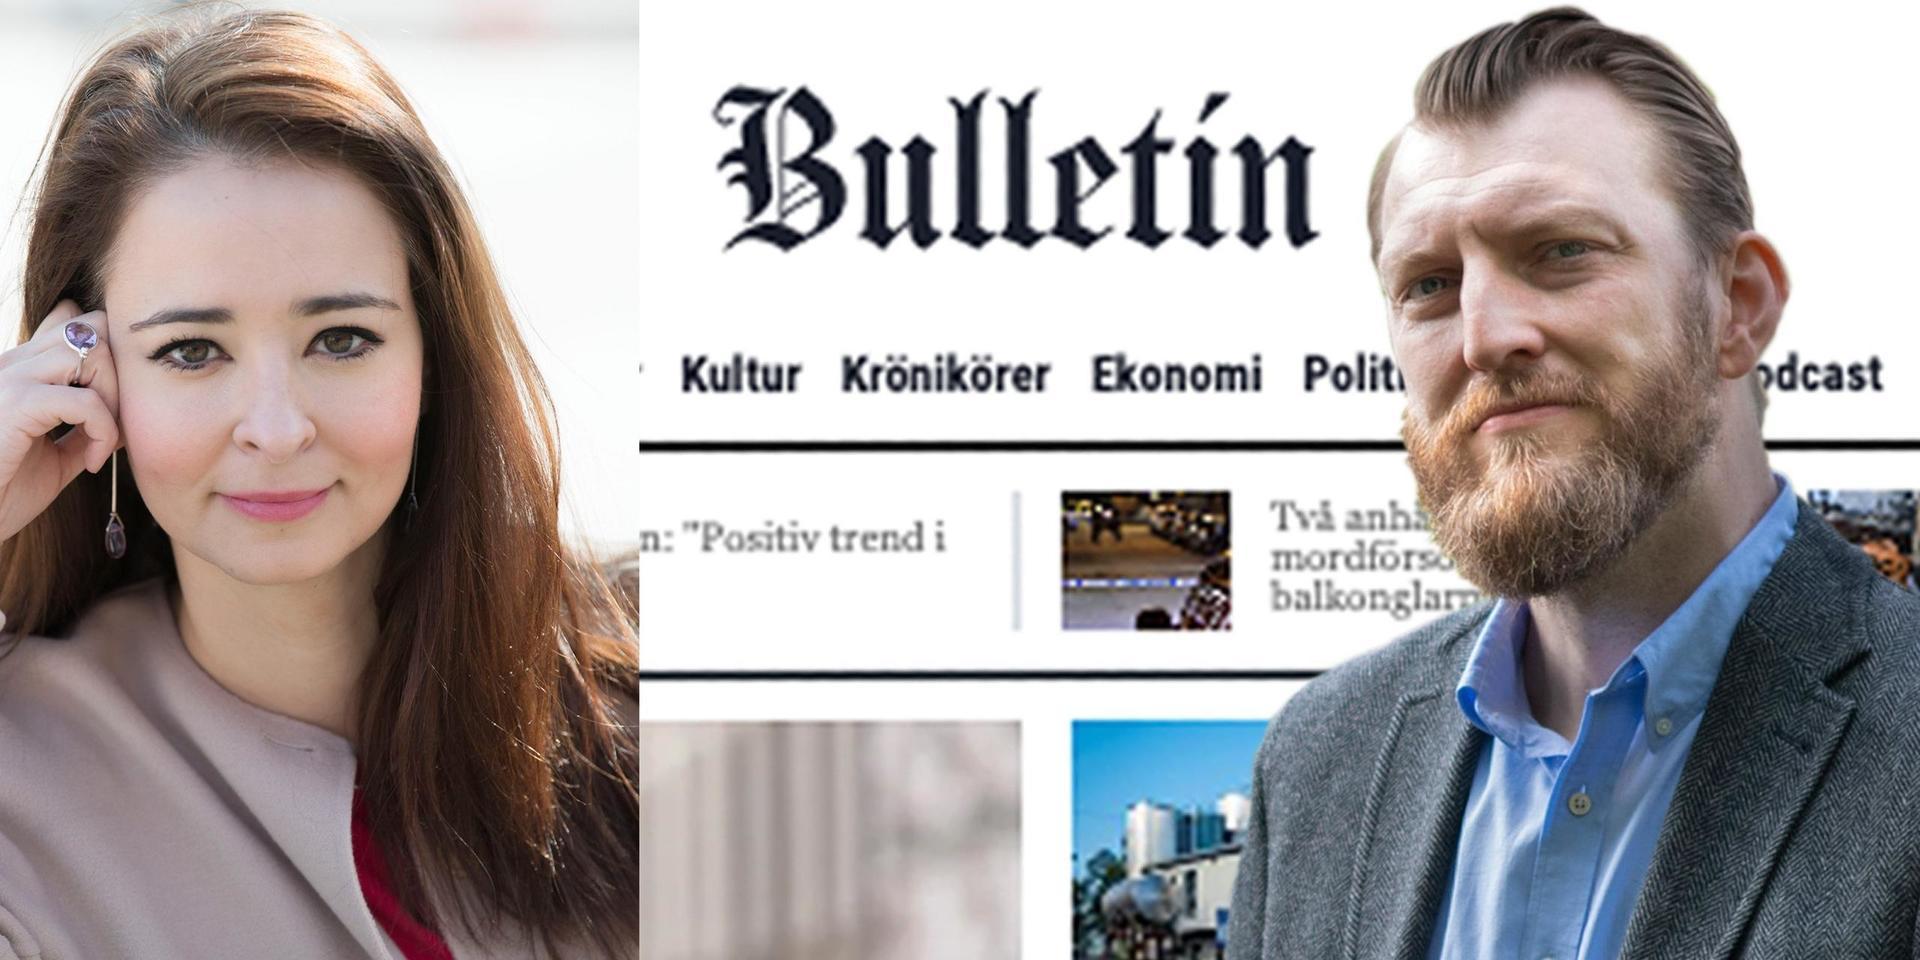 Bulletins chefredaktör Ivar Arpi och tidningens politiska chefredaktör Alice Teodorescu-Måwe lämnar nu nättidningen, som det stormat kring rejält den senaste tiden.